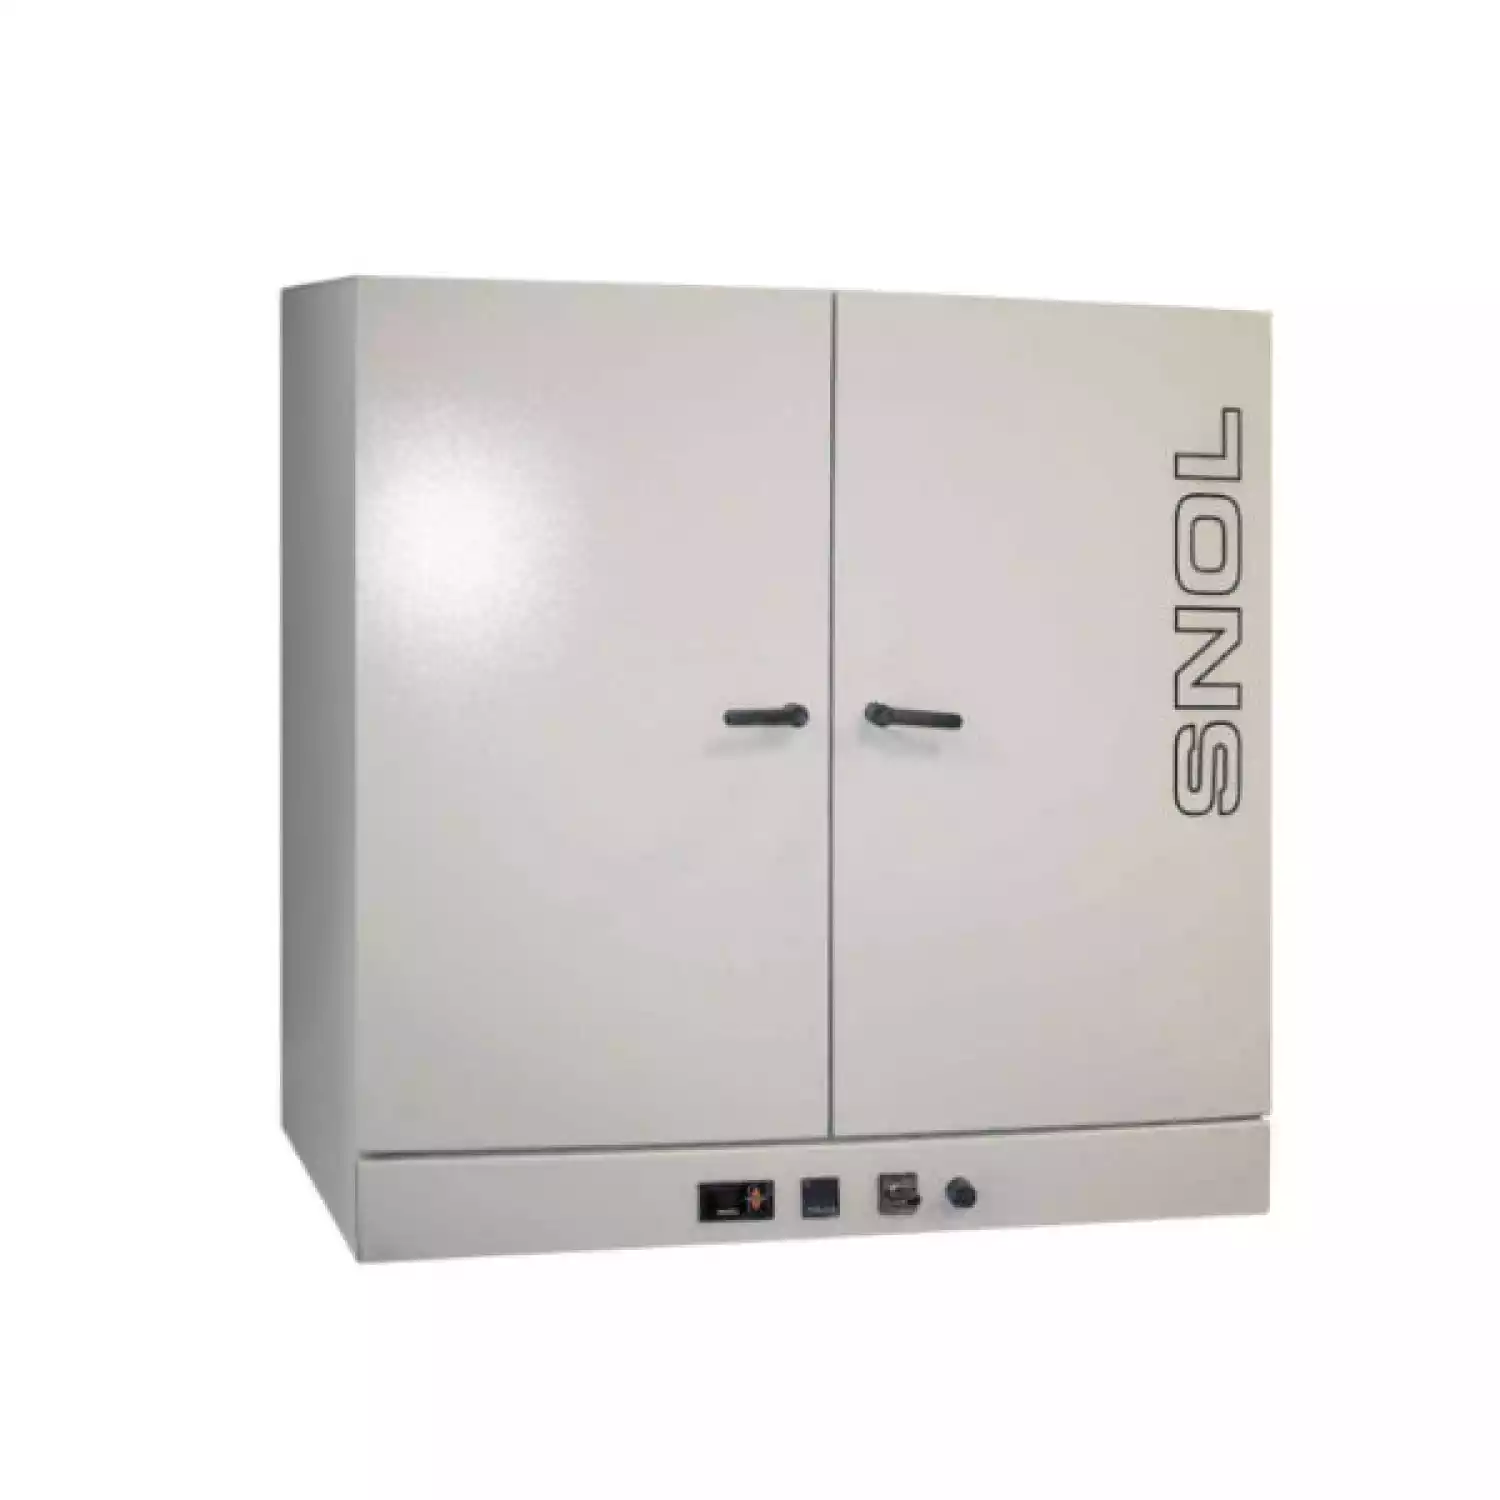 SNOL 420/300 LFNEc шкаф сушильный (420 л, нержавеющая сталь, электронный) - 1